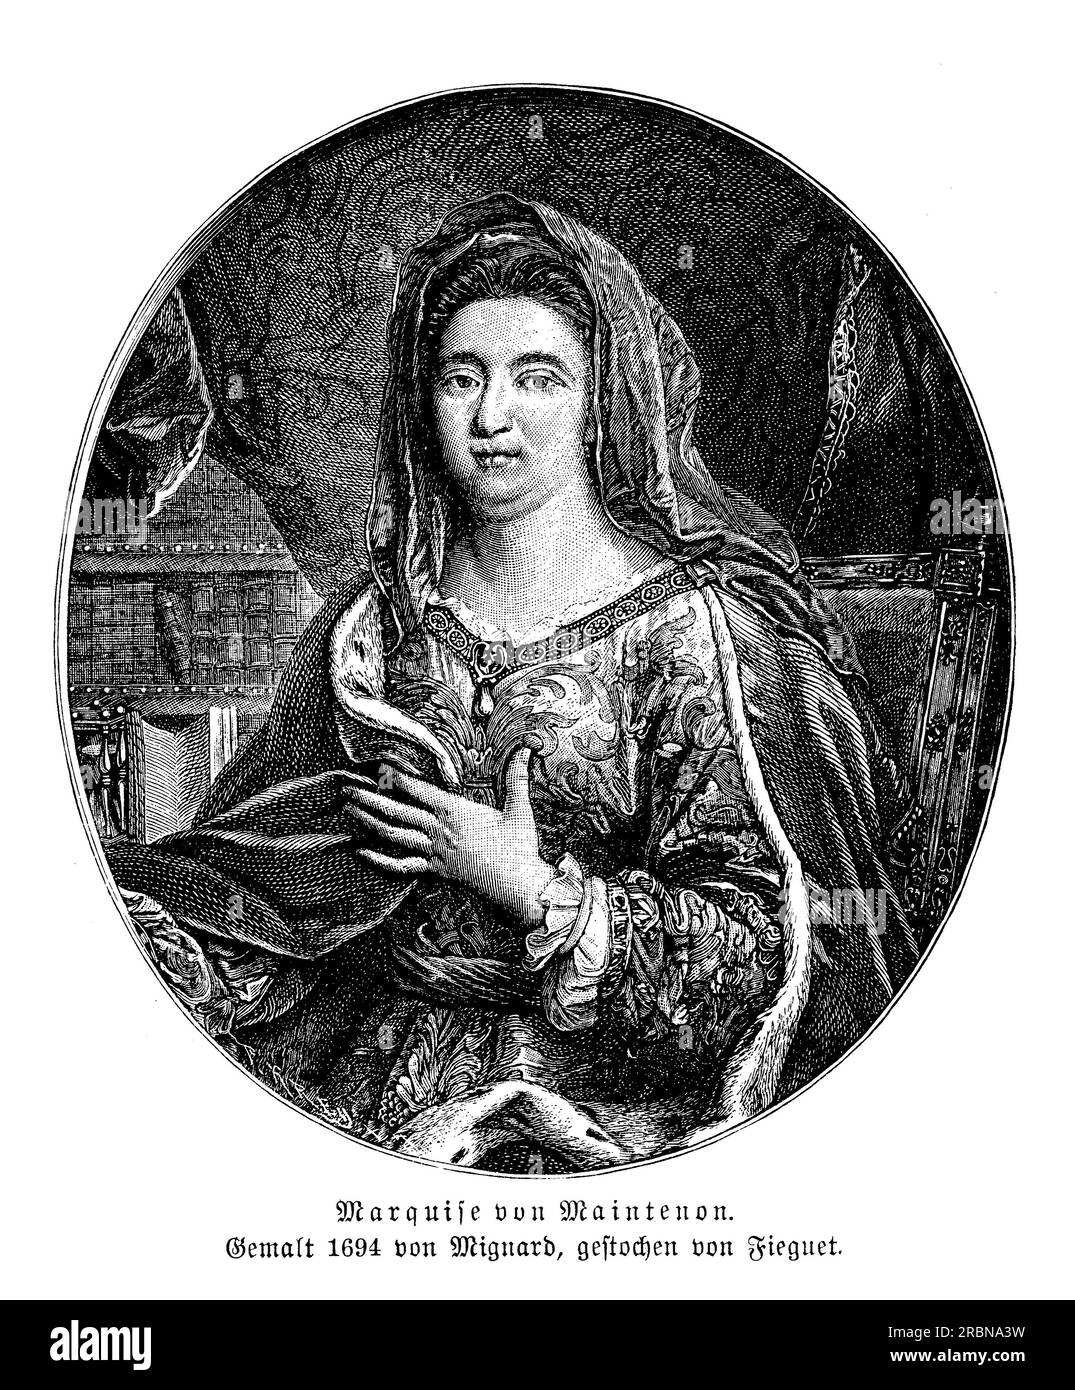 Portrait de la marquise de Maintenon, née Françoise d'Aubigné, seconde épouse du roi Louis XIV de France. Elle était une confidente proche du roi et exerça une influence politique significative pendant son règne. Maintenon est également connue pour sa philanthropie et sa fondation de la Maison royale de Saint-Louis, une école pour l’éducation des jeunes filles pauvres et nobles. Malgré ses nombreuses réalisations, Maintenon n'était pas universellement populaire, et son influence sur le roi était souvent critiquée. Après la mort du roi, elle se retire dans un couvent, où elle poursuit son travail philanthropique Banque D'Images